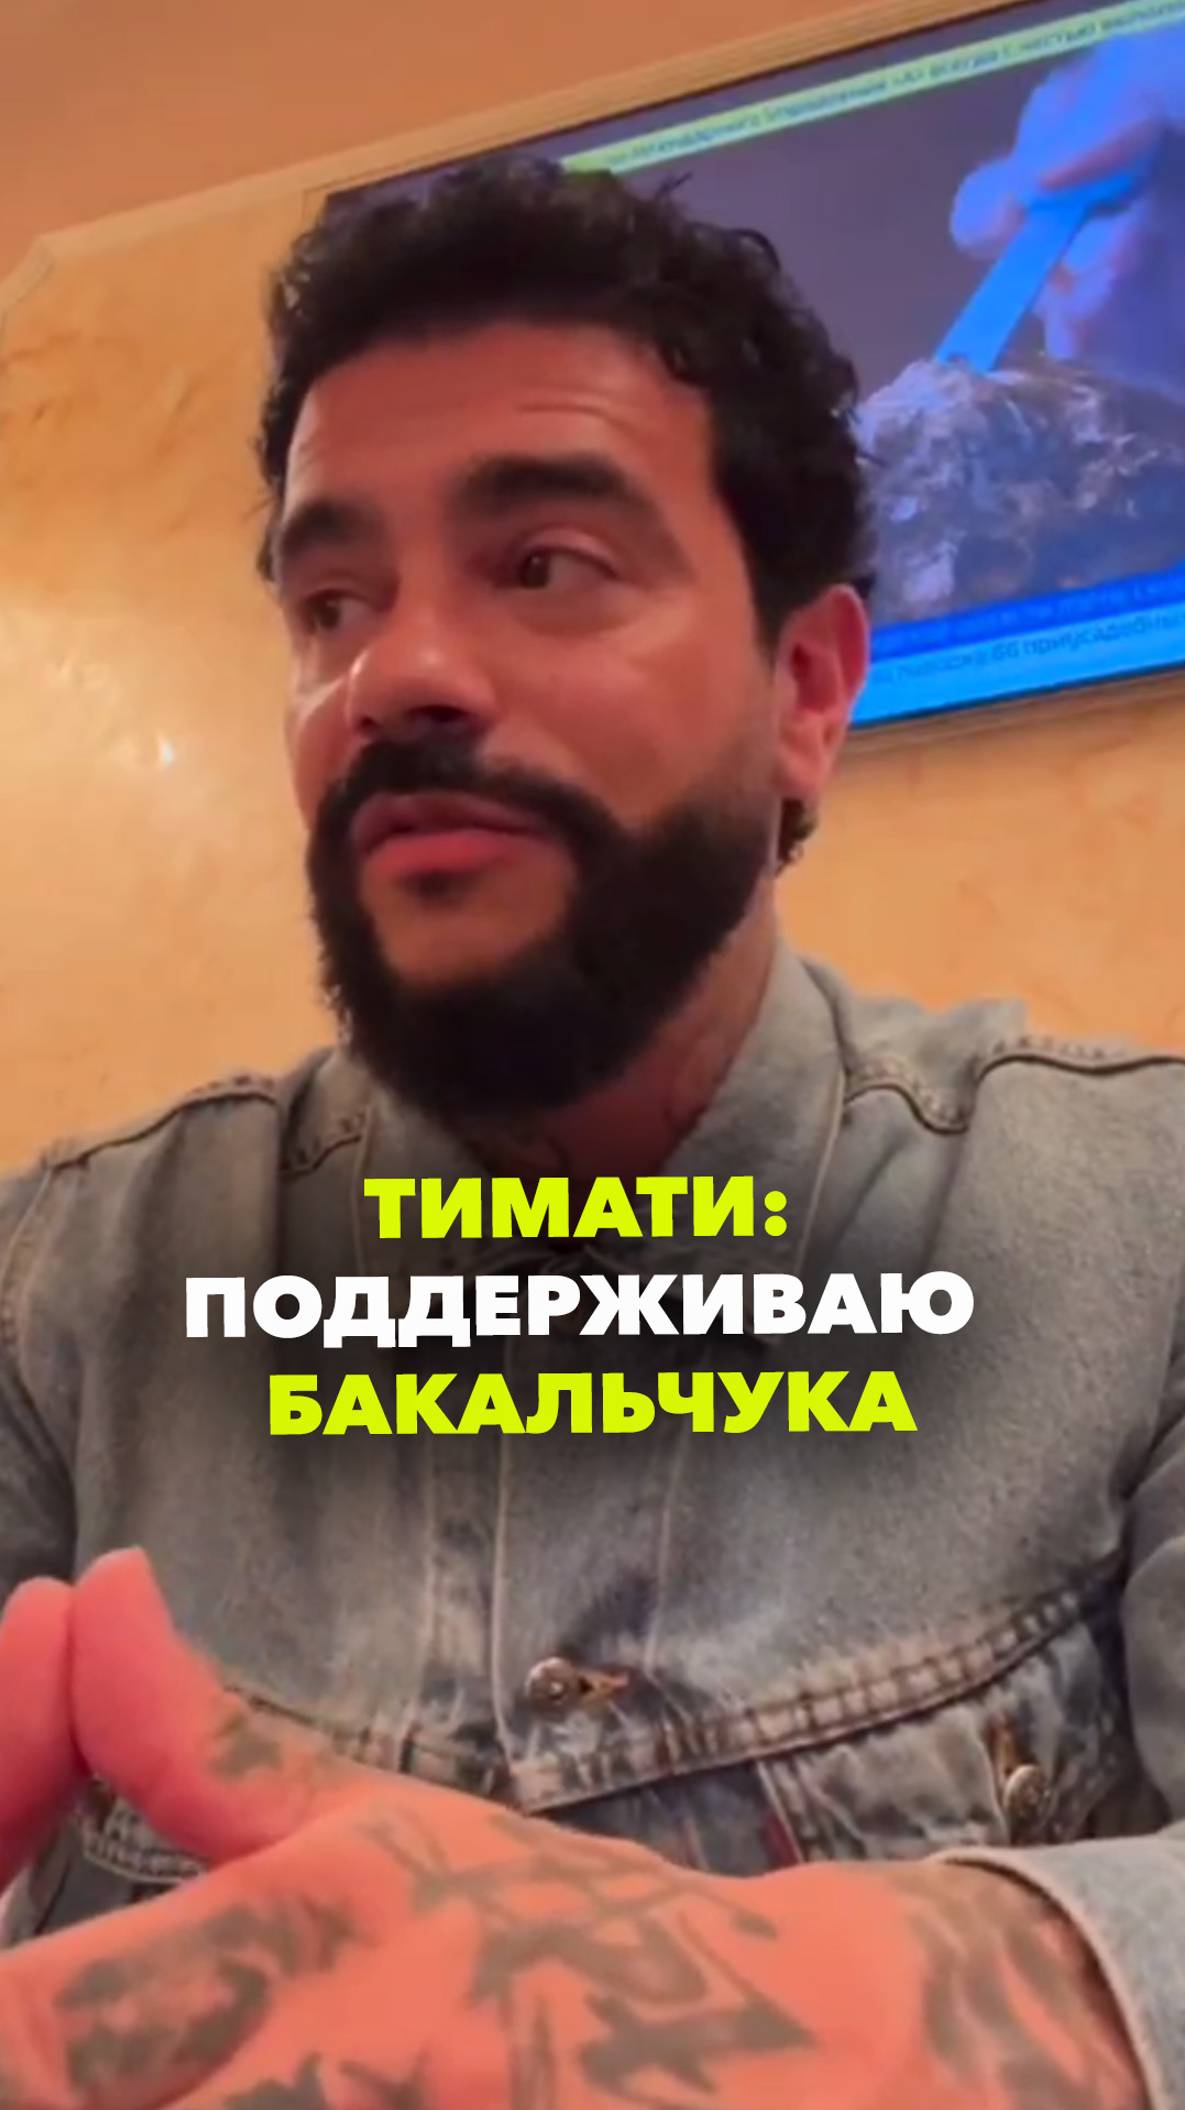 Тимати вступился за Бакальчука в конфликте с братьями Мирзояновыми